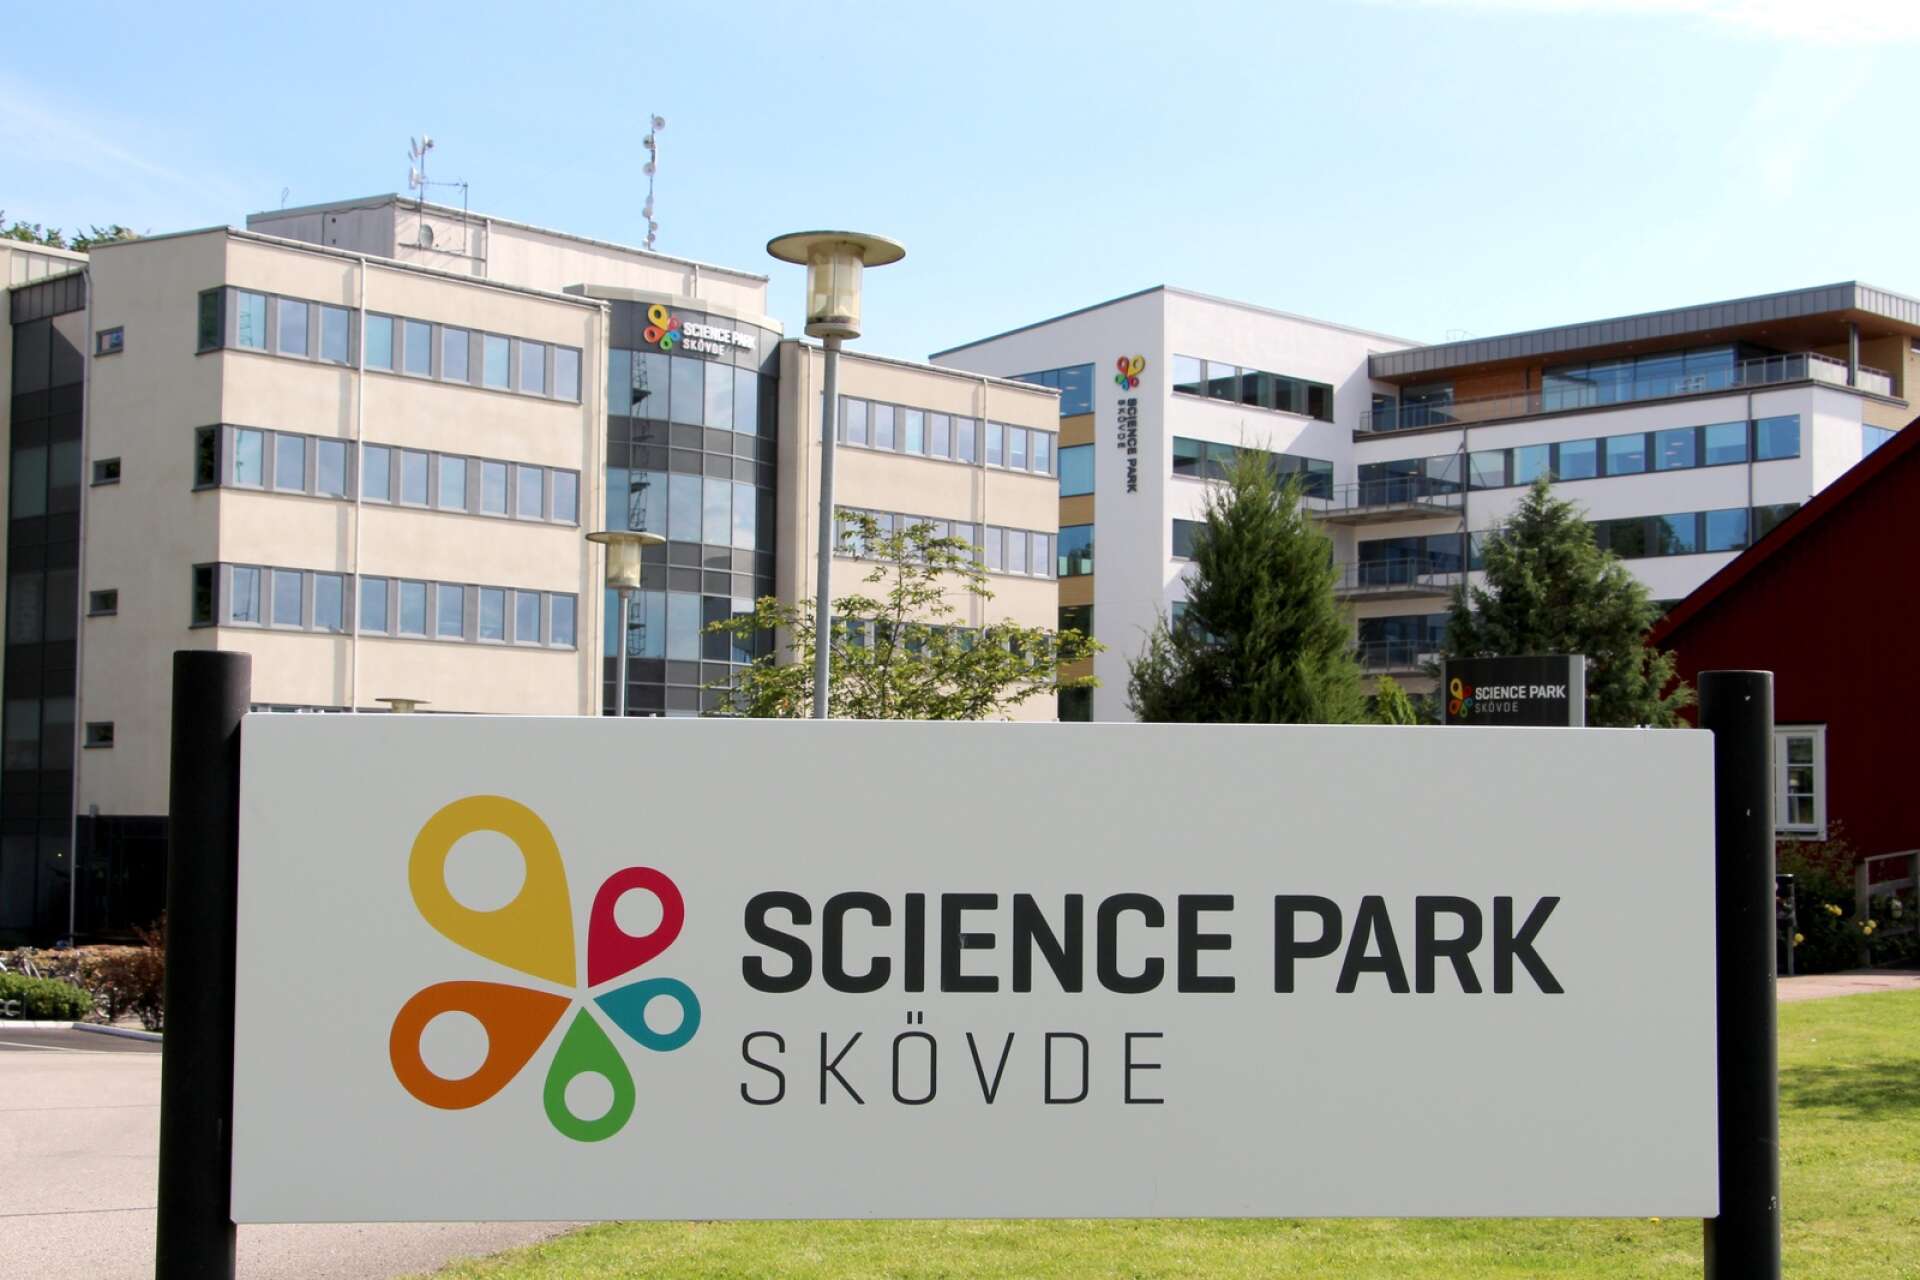 Kommunfullmäktige i Skövde beslutade om en nybyggnation vid Science Park i Skövde. 